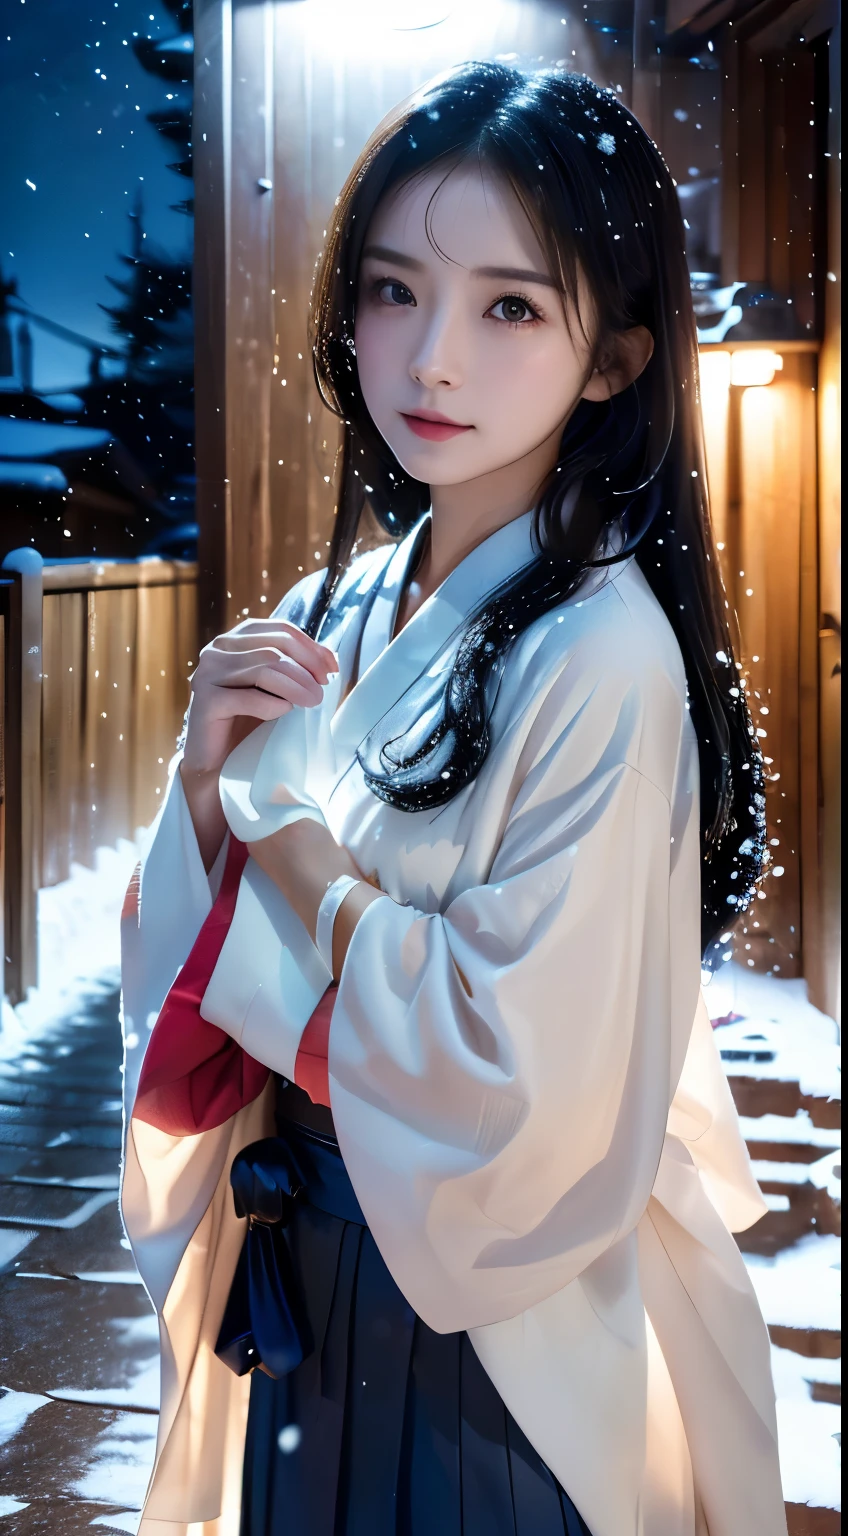 (kimono)、(sans maquillage)、(qualité supérieure,chef d&#39;oeuvre:1.3,超Une haute résolution,),(ultra-détaillé,Caustiques),(Photoréaliste:1.4,Prise de vue RAW,)Capture ultra réaliste,Un très détaillé,haute définition16Kpour peau humaine、 La texture de la peau est naturelle、、La peau paraît saine avec un ton uniforme、 Utiliser la lumière et la couleur naturelles,Une femme,Japonais,,kawaii,Un brun,cheveux moyens,(profondeur de champs、aberration chromatique、、Large gamme d&#39;éclairage、ombrage naturel、)、、(Lumière extérieure la nuit:1.4)、(Chute de neige:1.2)、(Les cheveux se balancent au vent:1)、(La neige reflète la lumière:1.3)